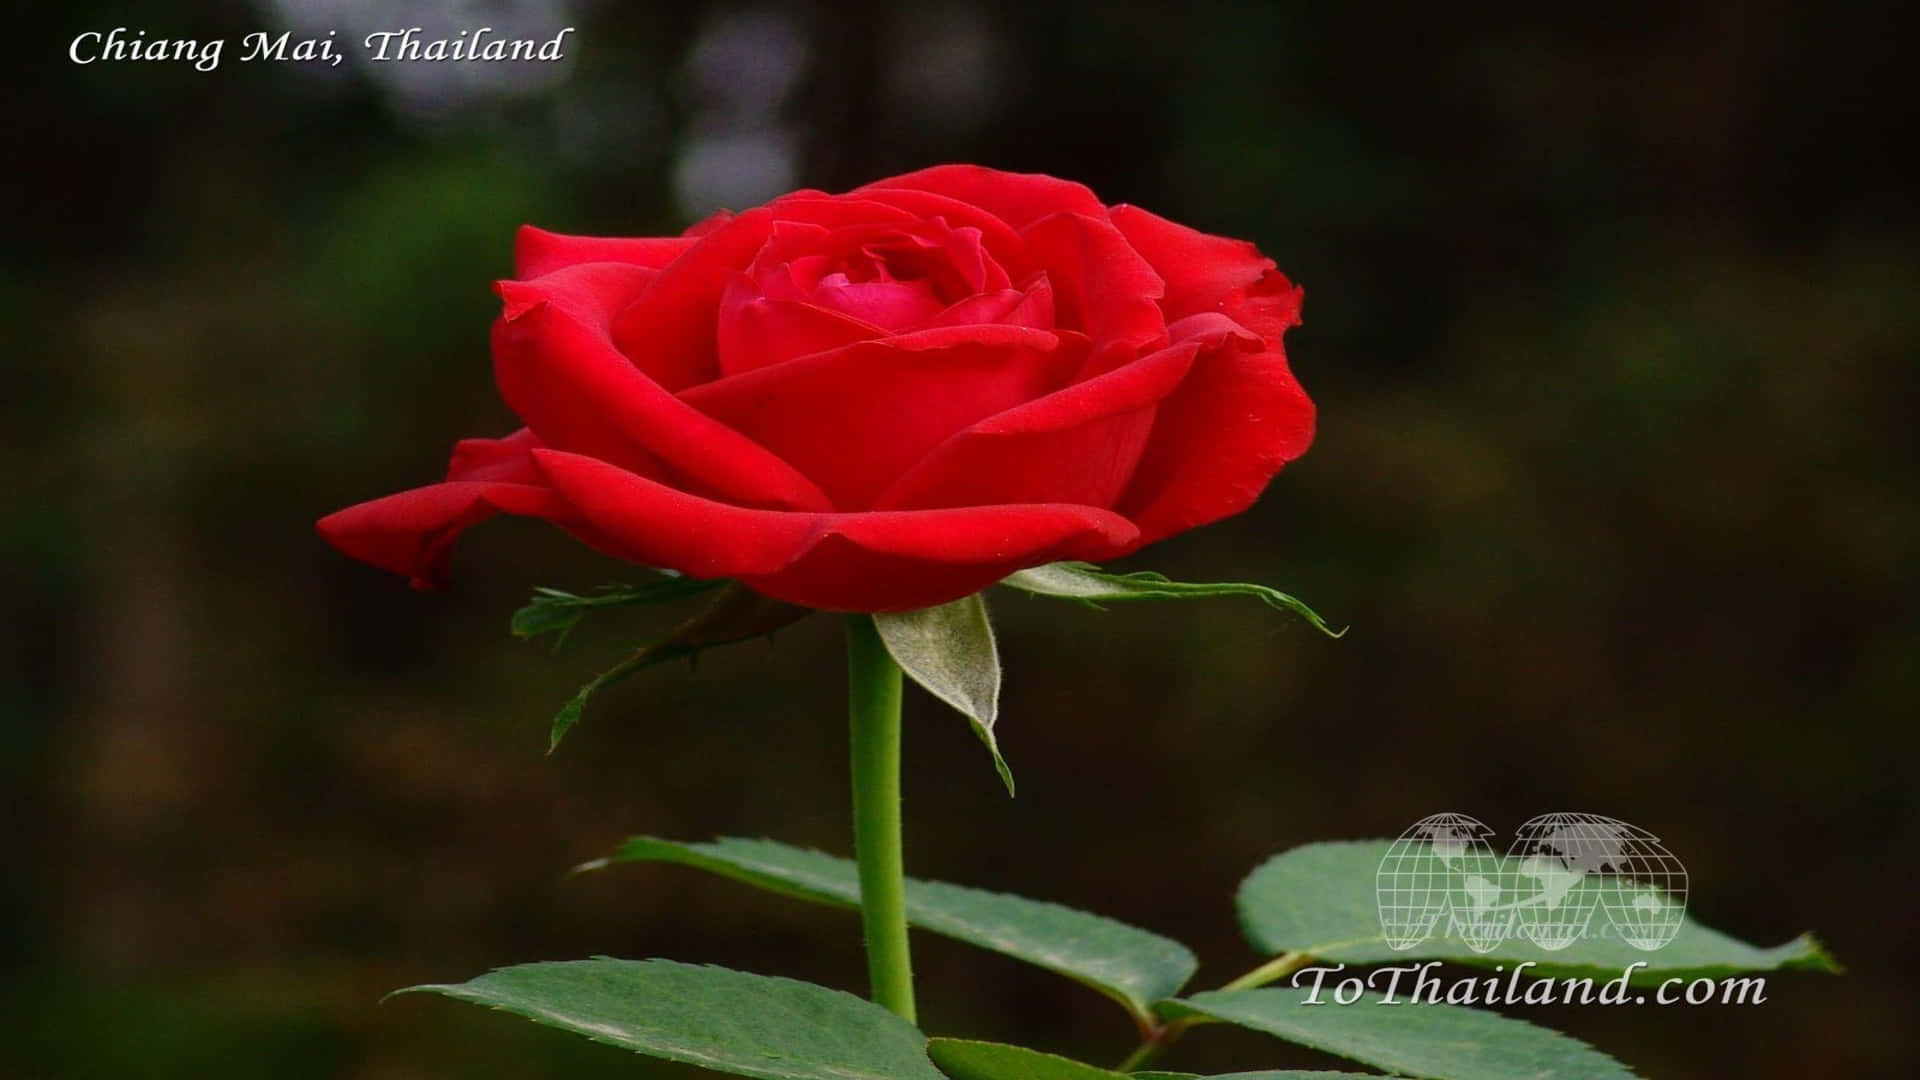 Unaimpresionante Imagen Vibrante De Rosas En Calidad 1080p.